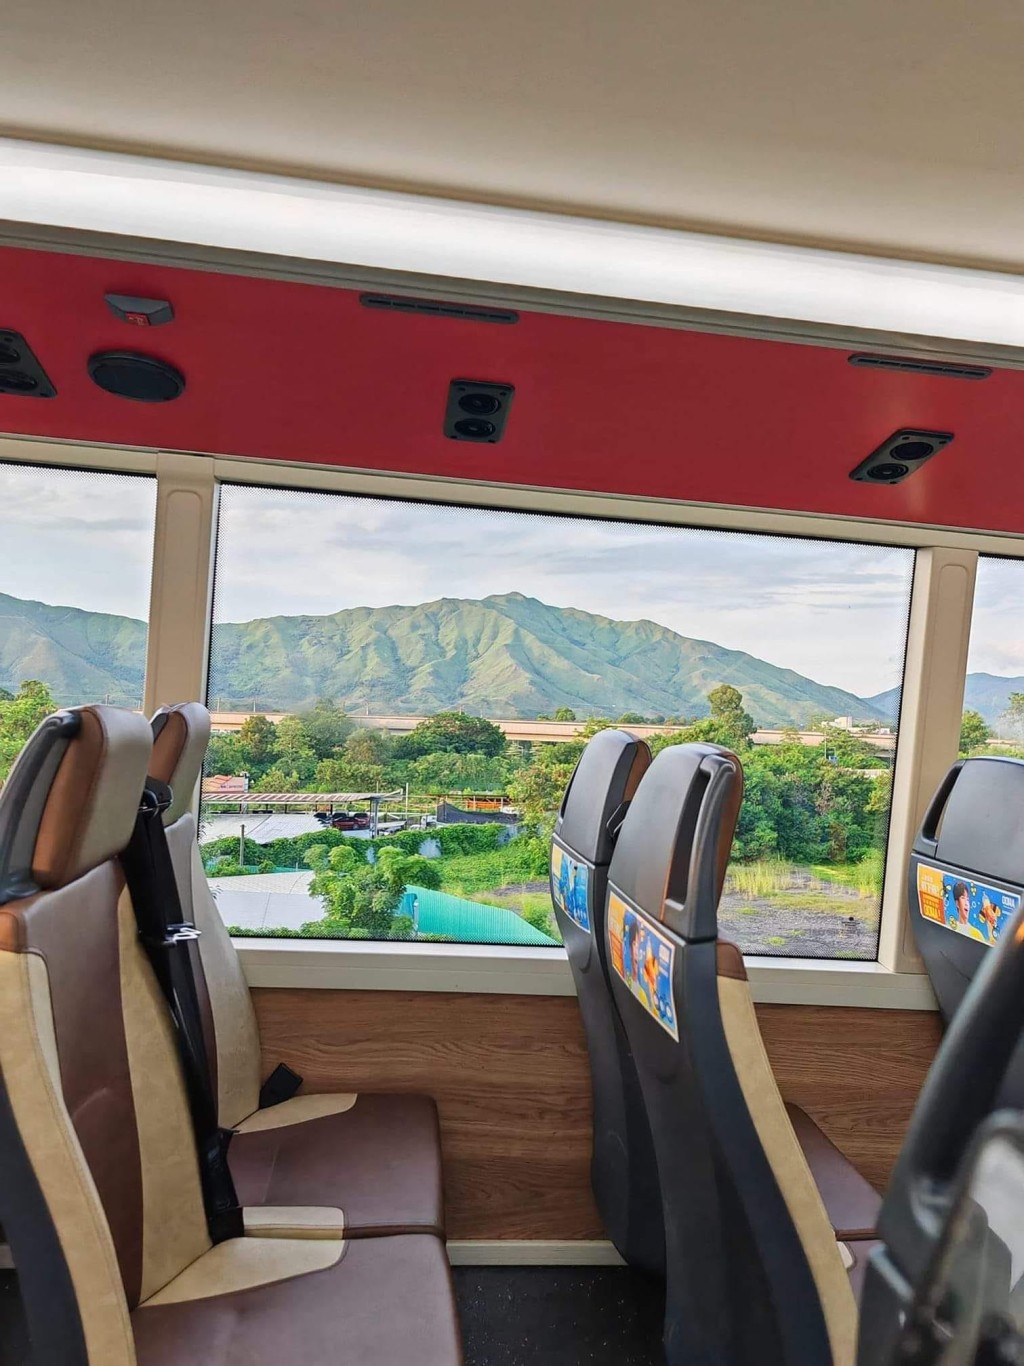 網上近日流傳著一幀巴士上拍攝的八鄉雞公嶺相片，車窗外風光美如油畫，驚艷網民。網上截圖